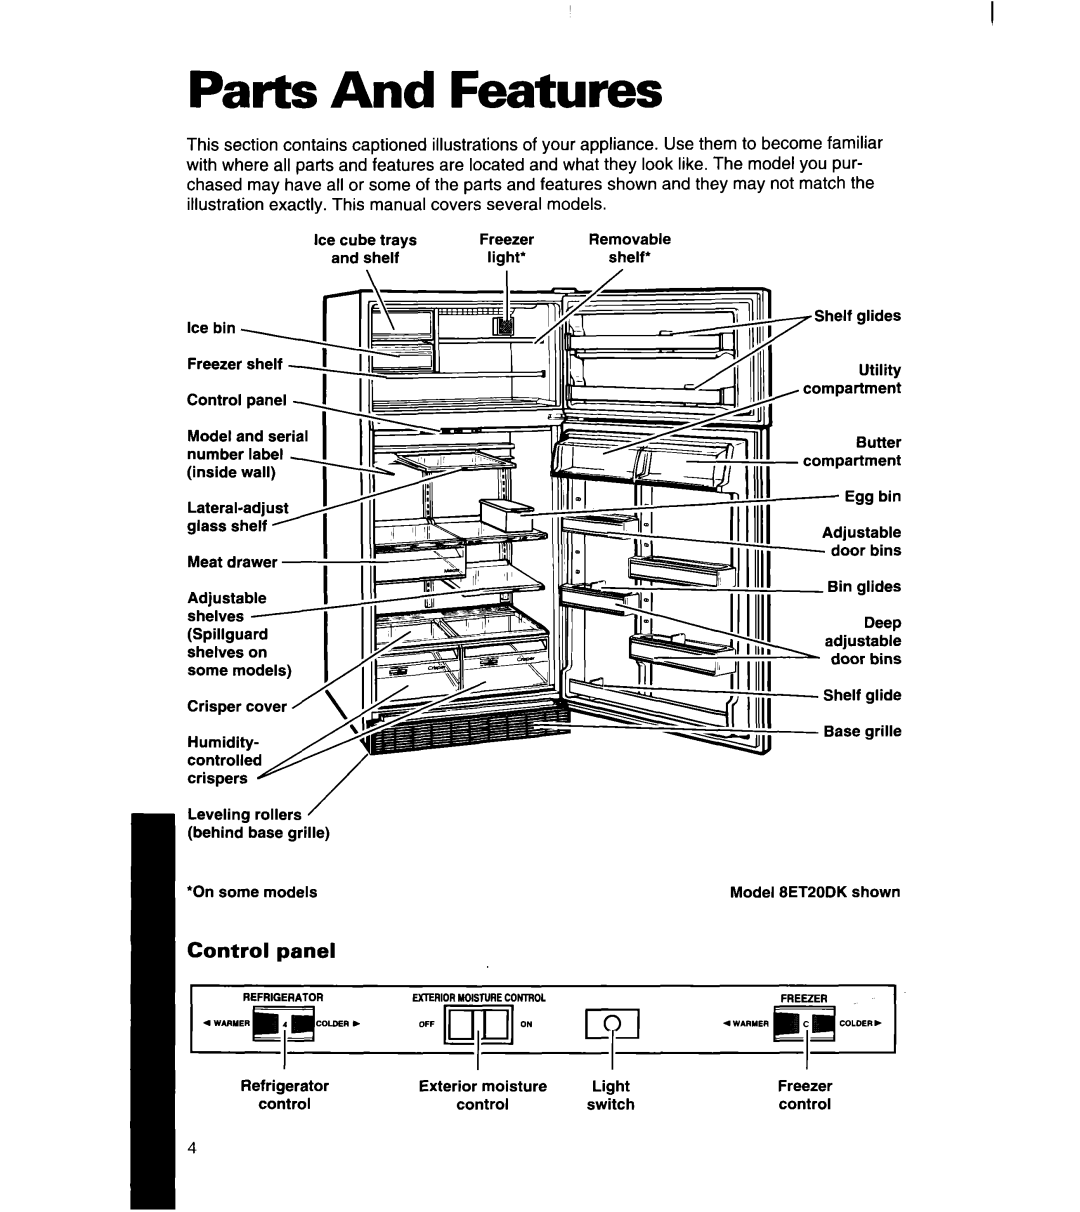 Whirlpool 8ET18DK, 8ET22DK, 8ET20DK manual Parts And Features, panel 